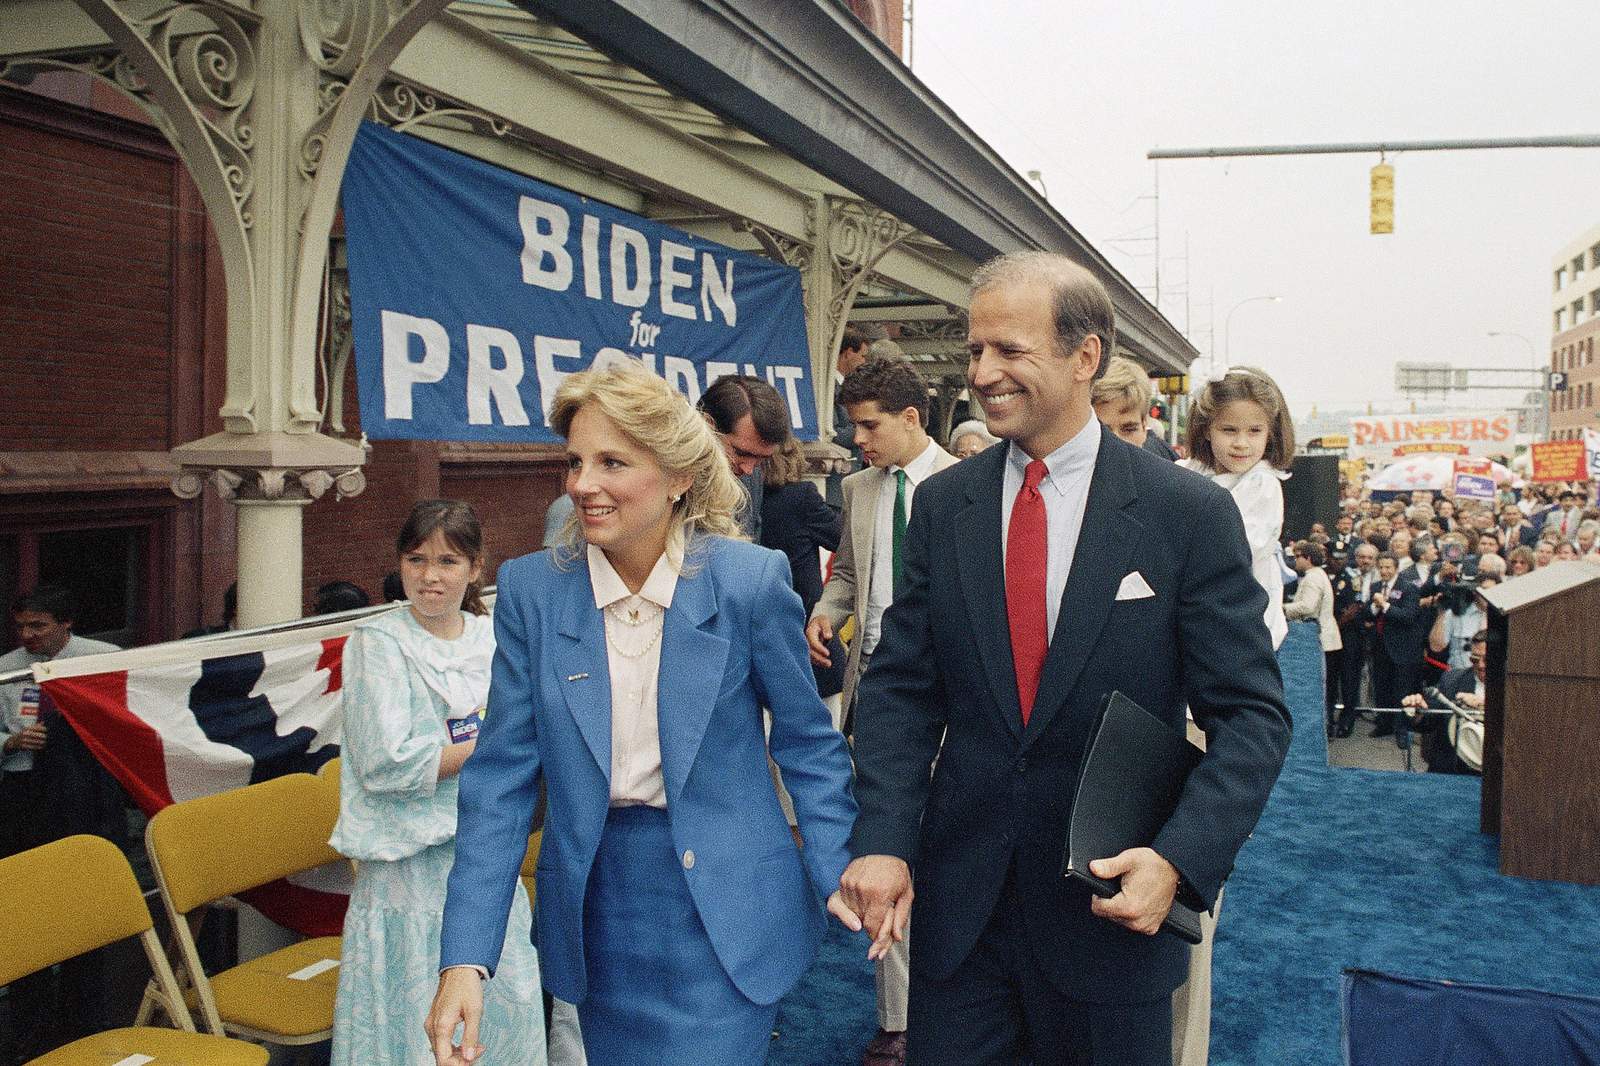 Photos show Joe Biden and his decades of public life